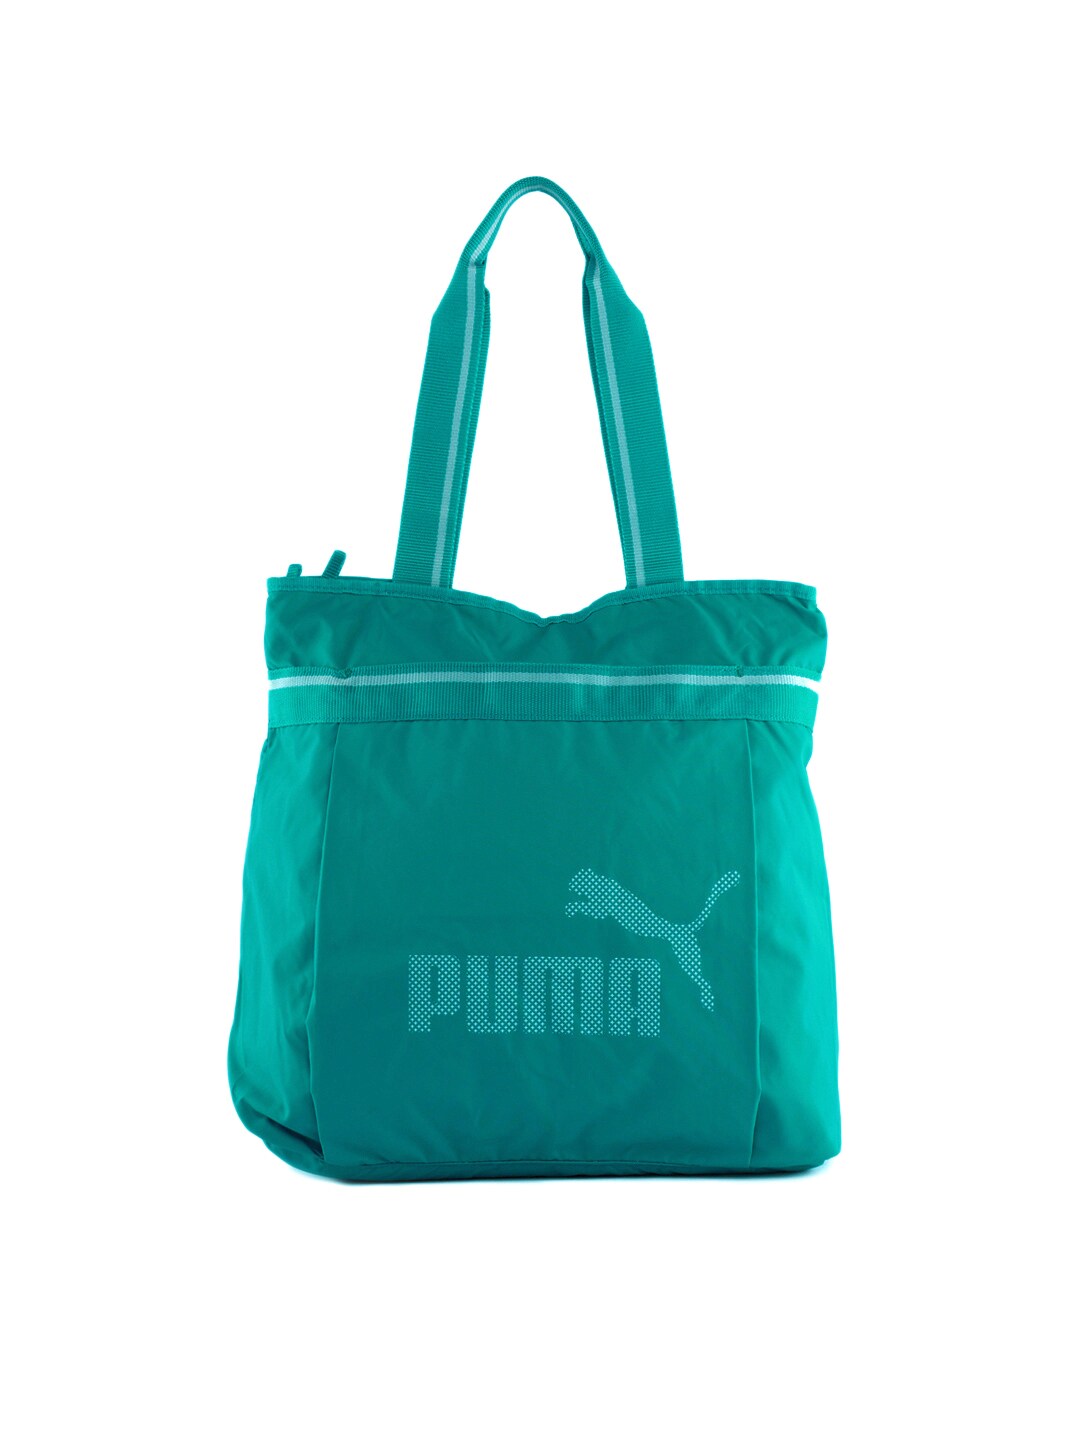 Puma Women Shopper Sea Blue Handbag